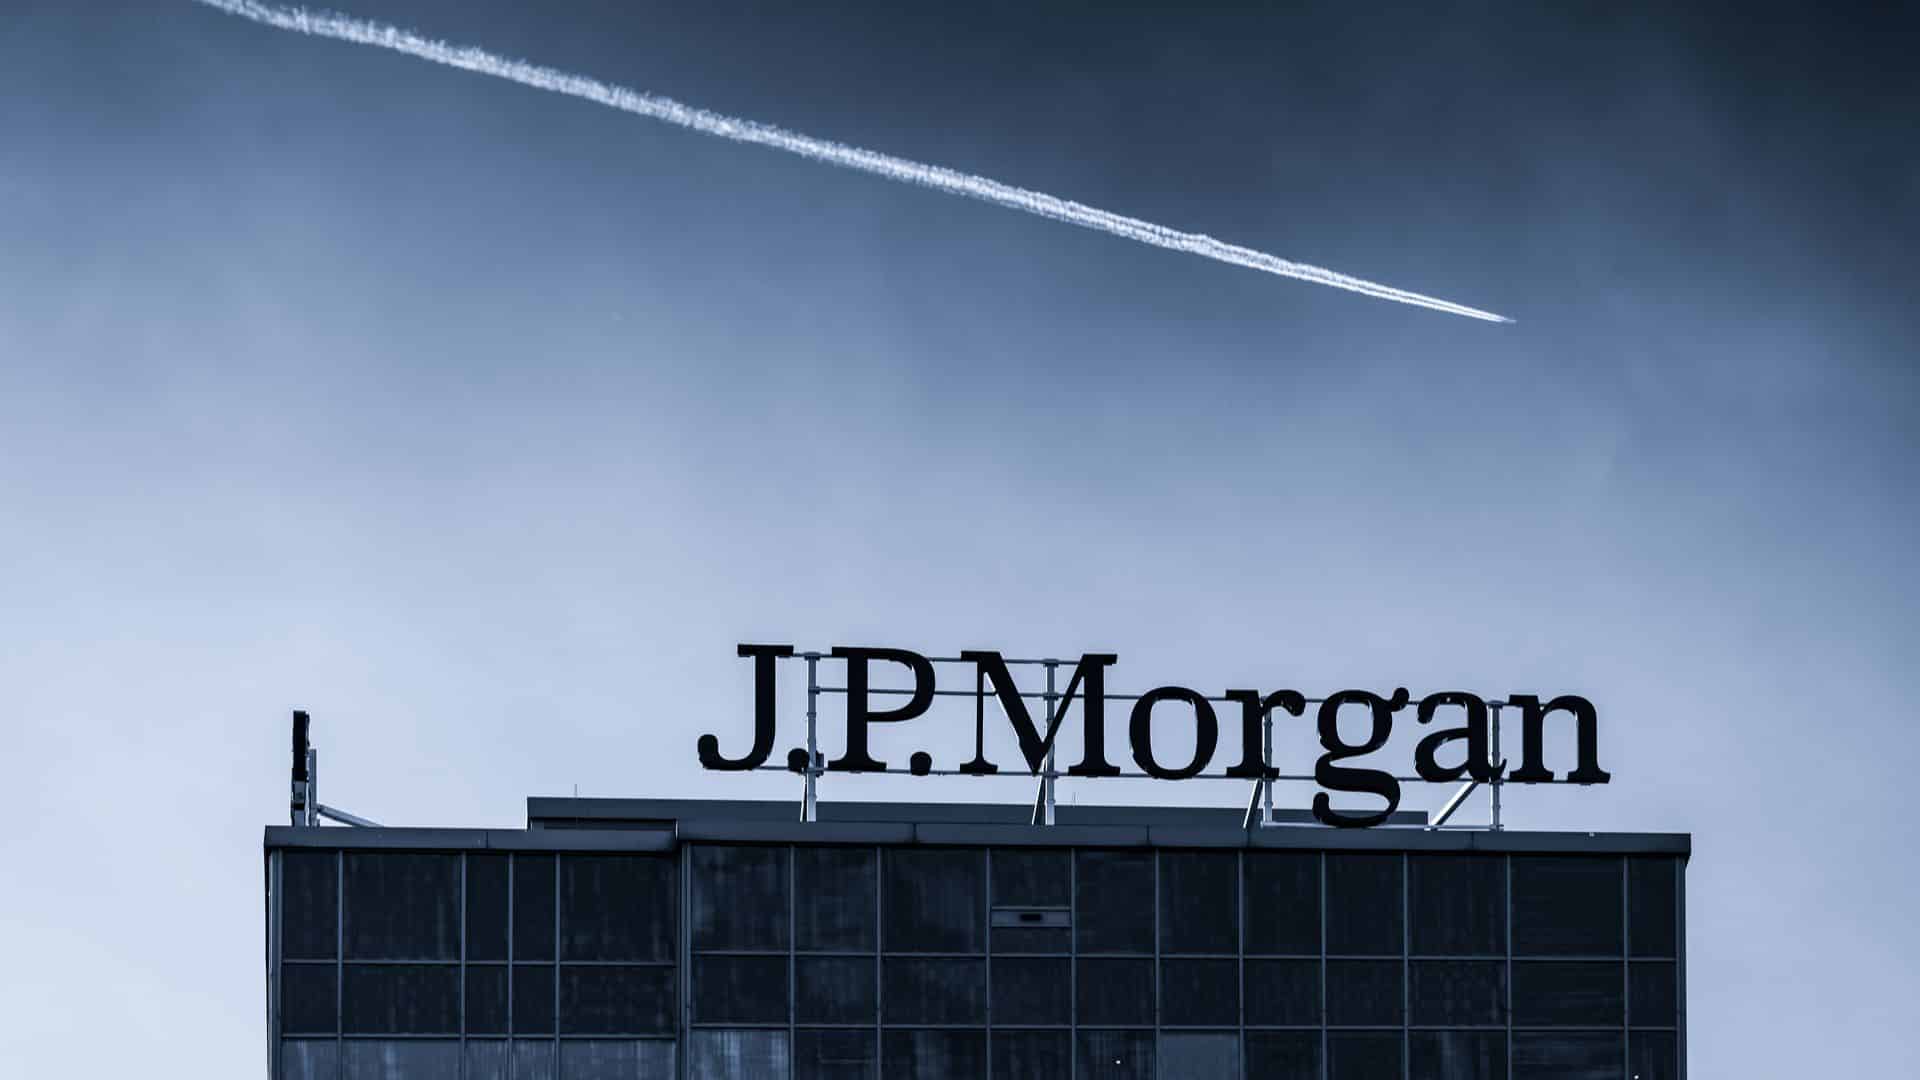 A maioria das criptomoedas ainda é um lixo, diz executivo do JPMorgan